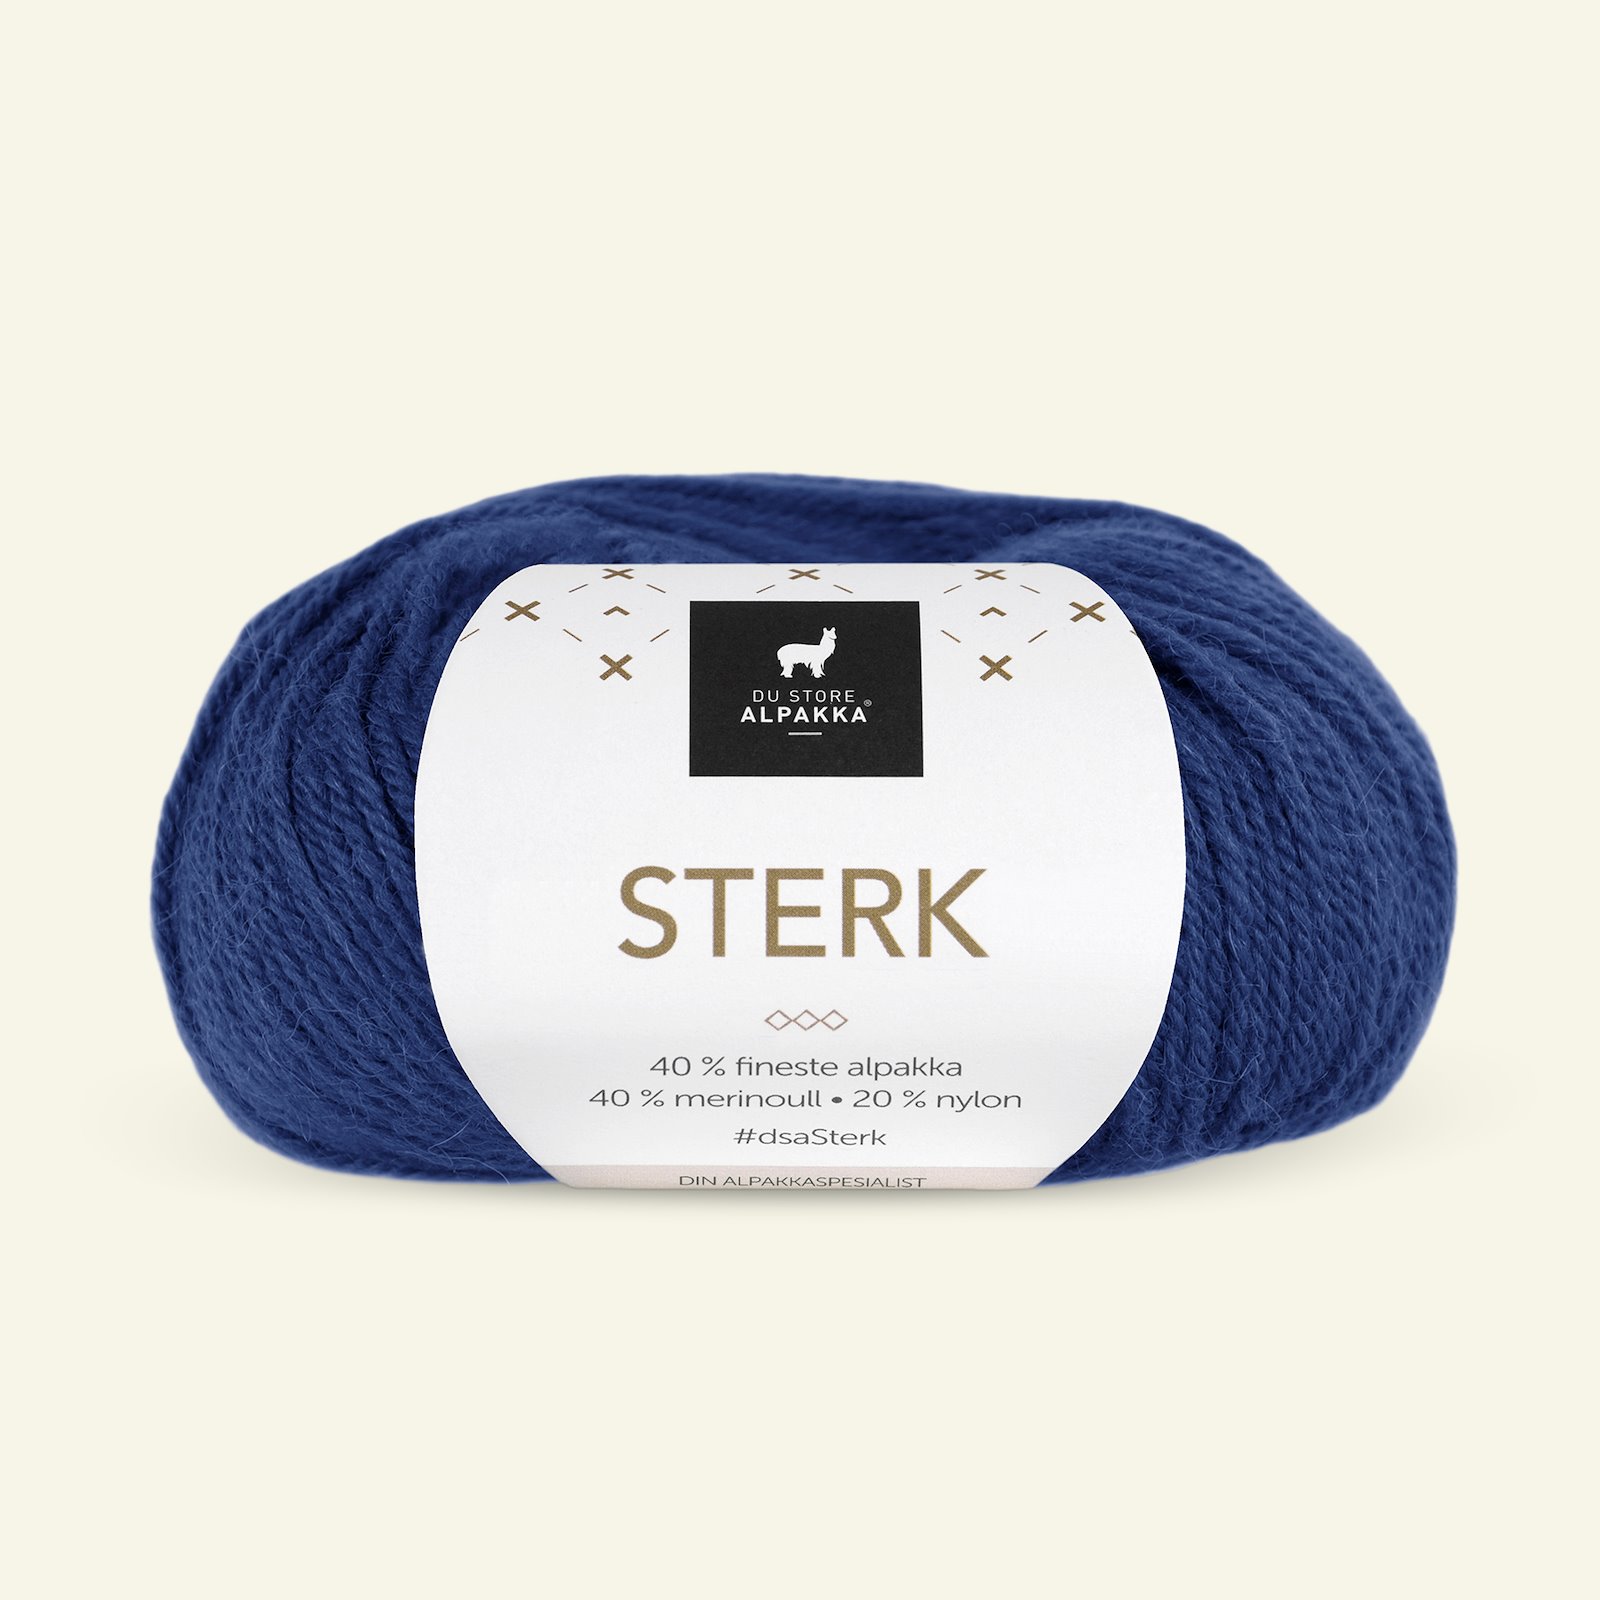 Du Store Alpakka, alpakka merino blandingsgarn "Sterk", blå (815) 90000661_pack